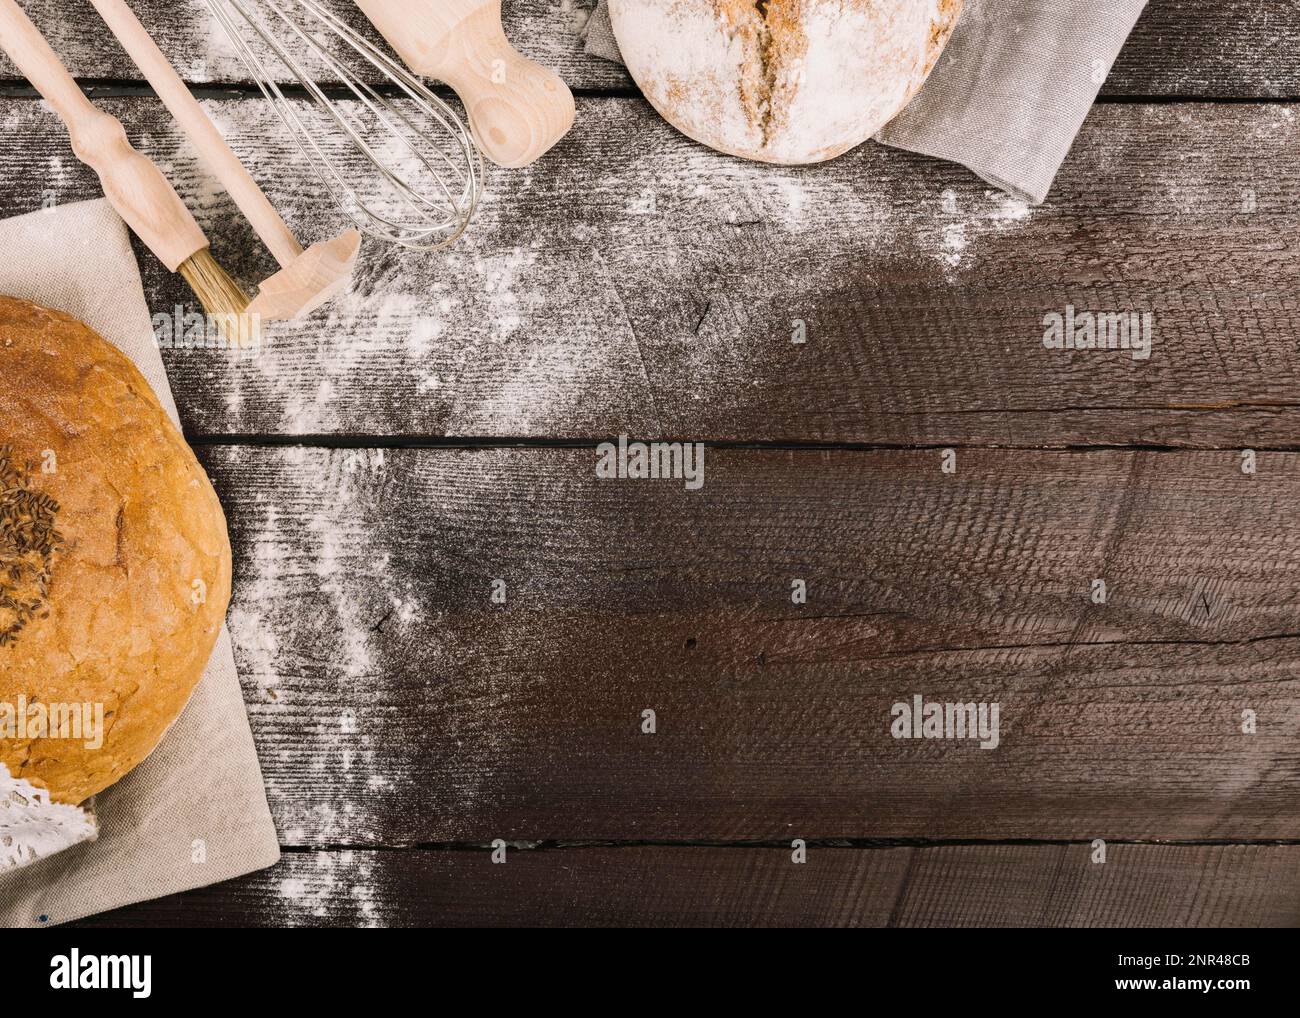 Brot Küchengeräte mit Mehl Holzdiele staubt Stockfoto